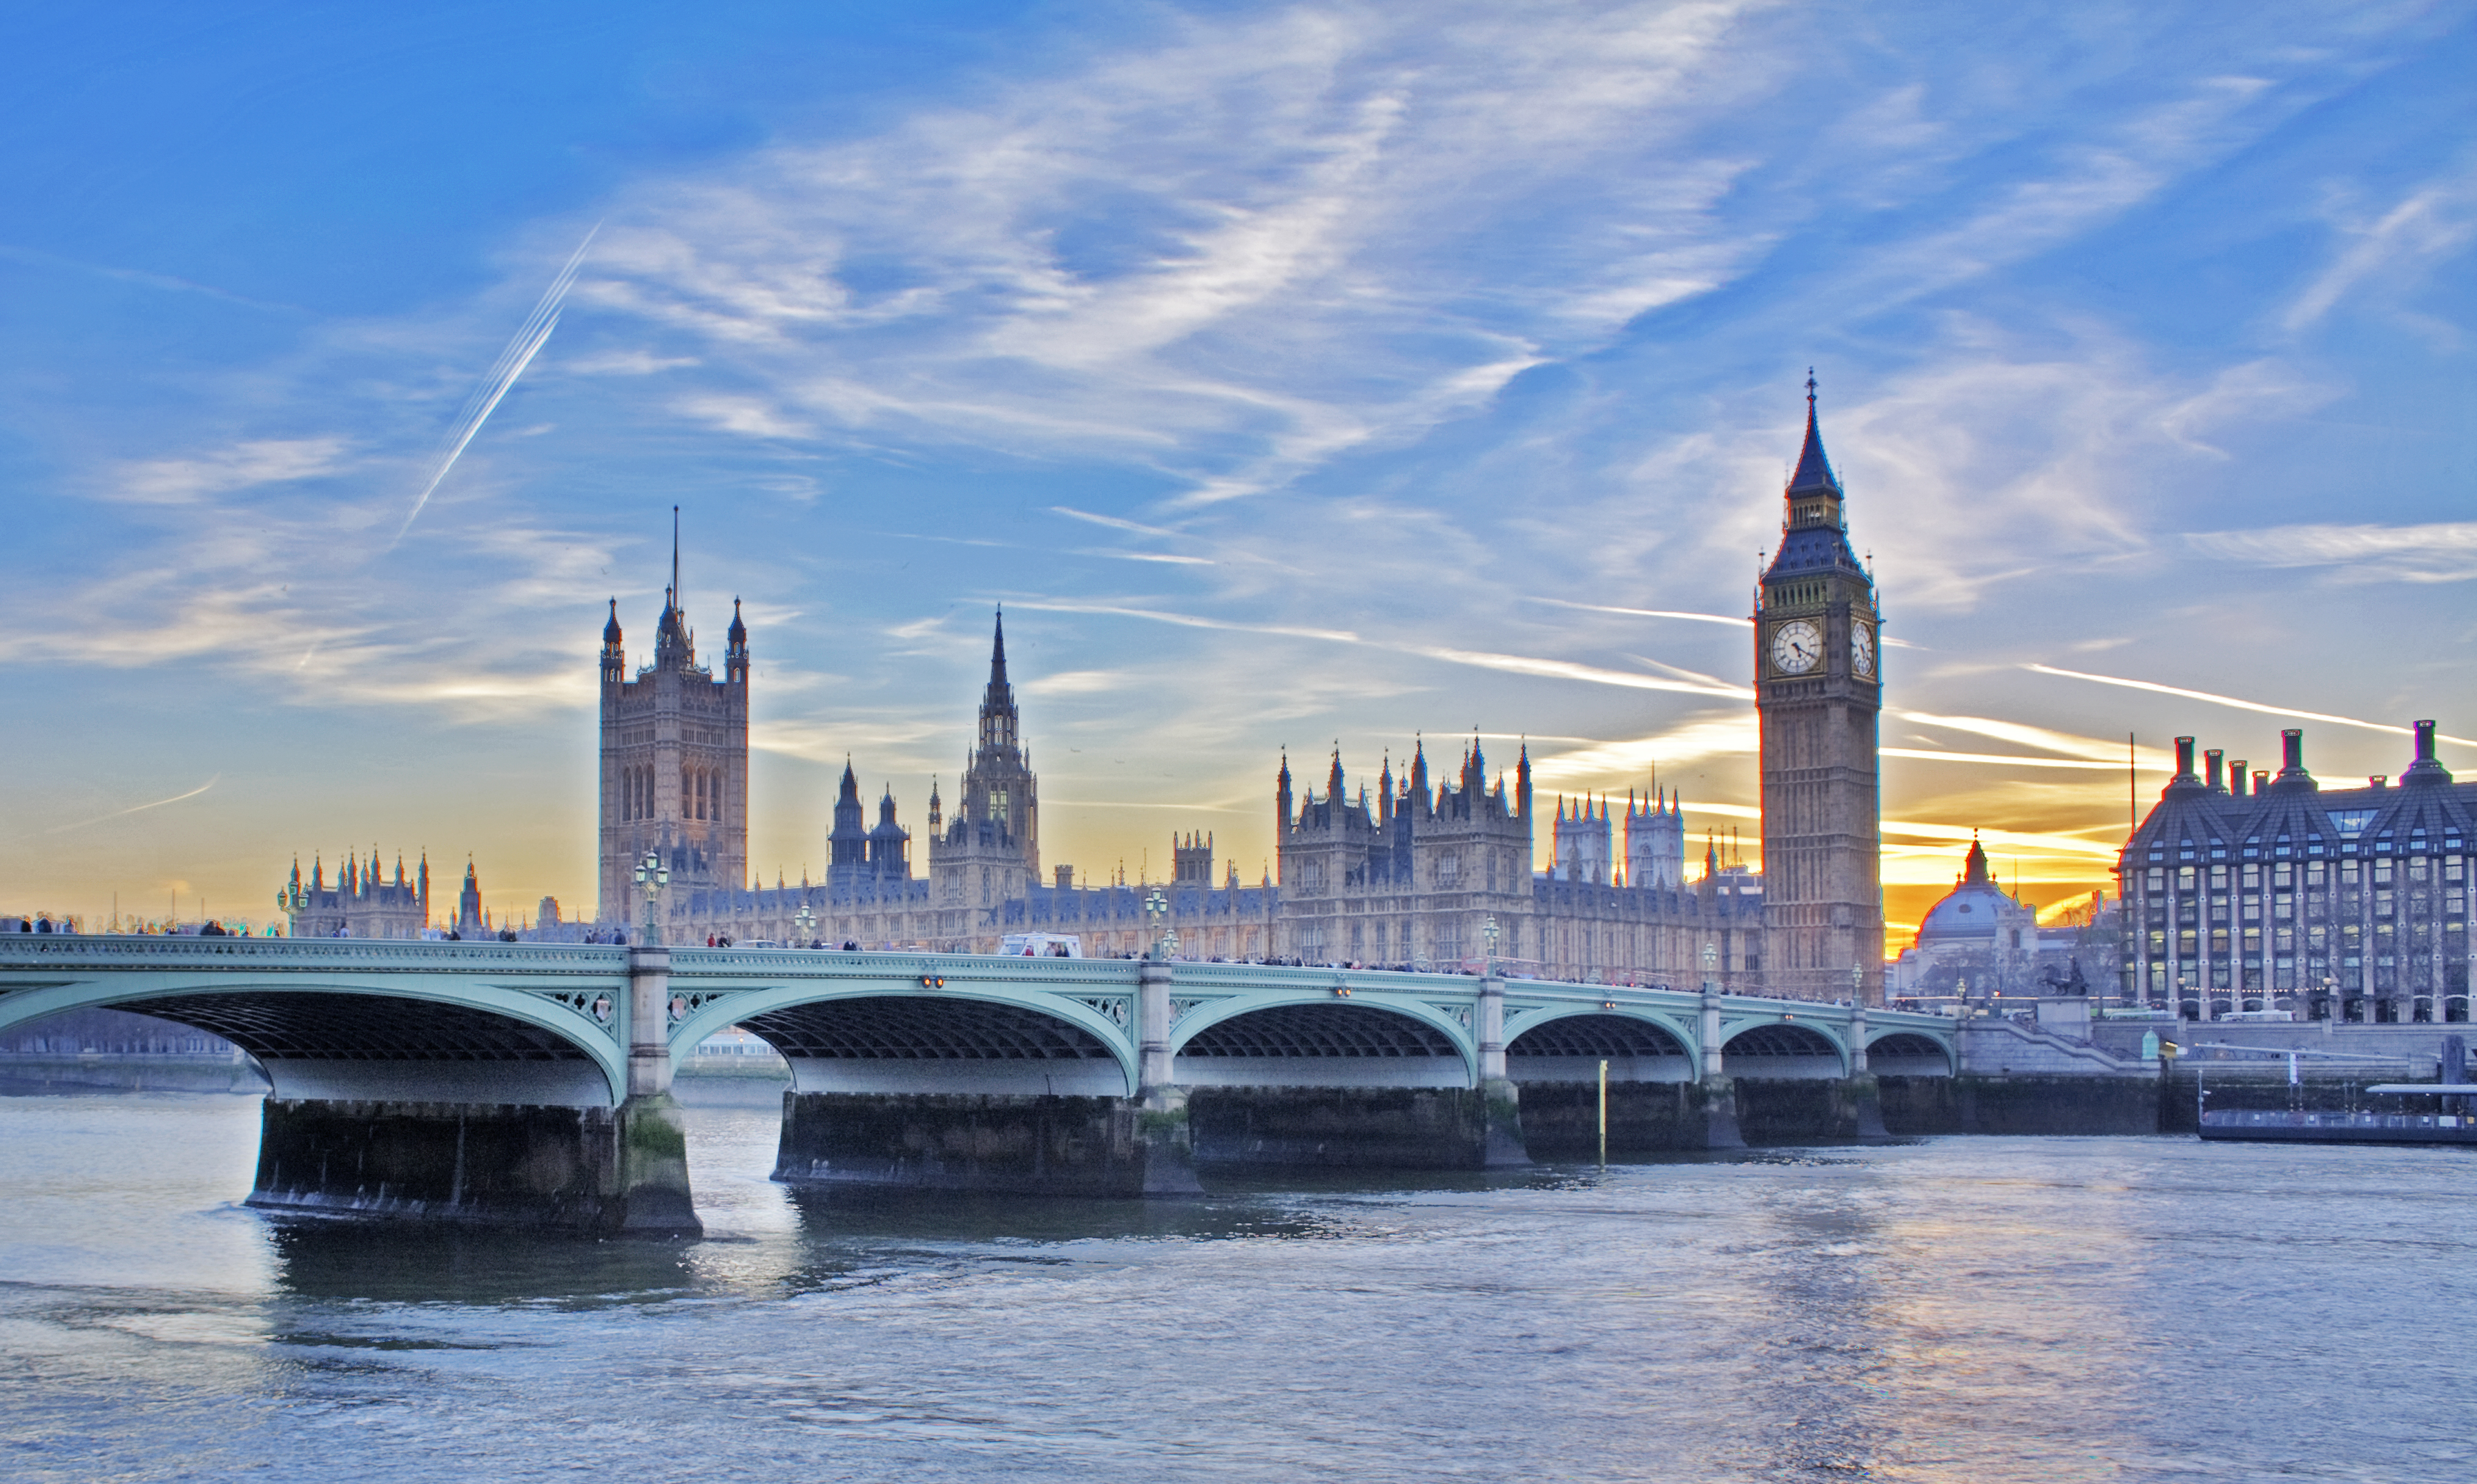 フリー画像 人工風景 建造物 建築物 橋の風景 ビッグ ベン ウェストミンスター宮殿 世界遺産 城 宮殿 イギリス風景 ロンドン フリー素材 画像素材なら 無料 フリー写真素材のフリーフォト